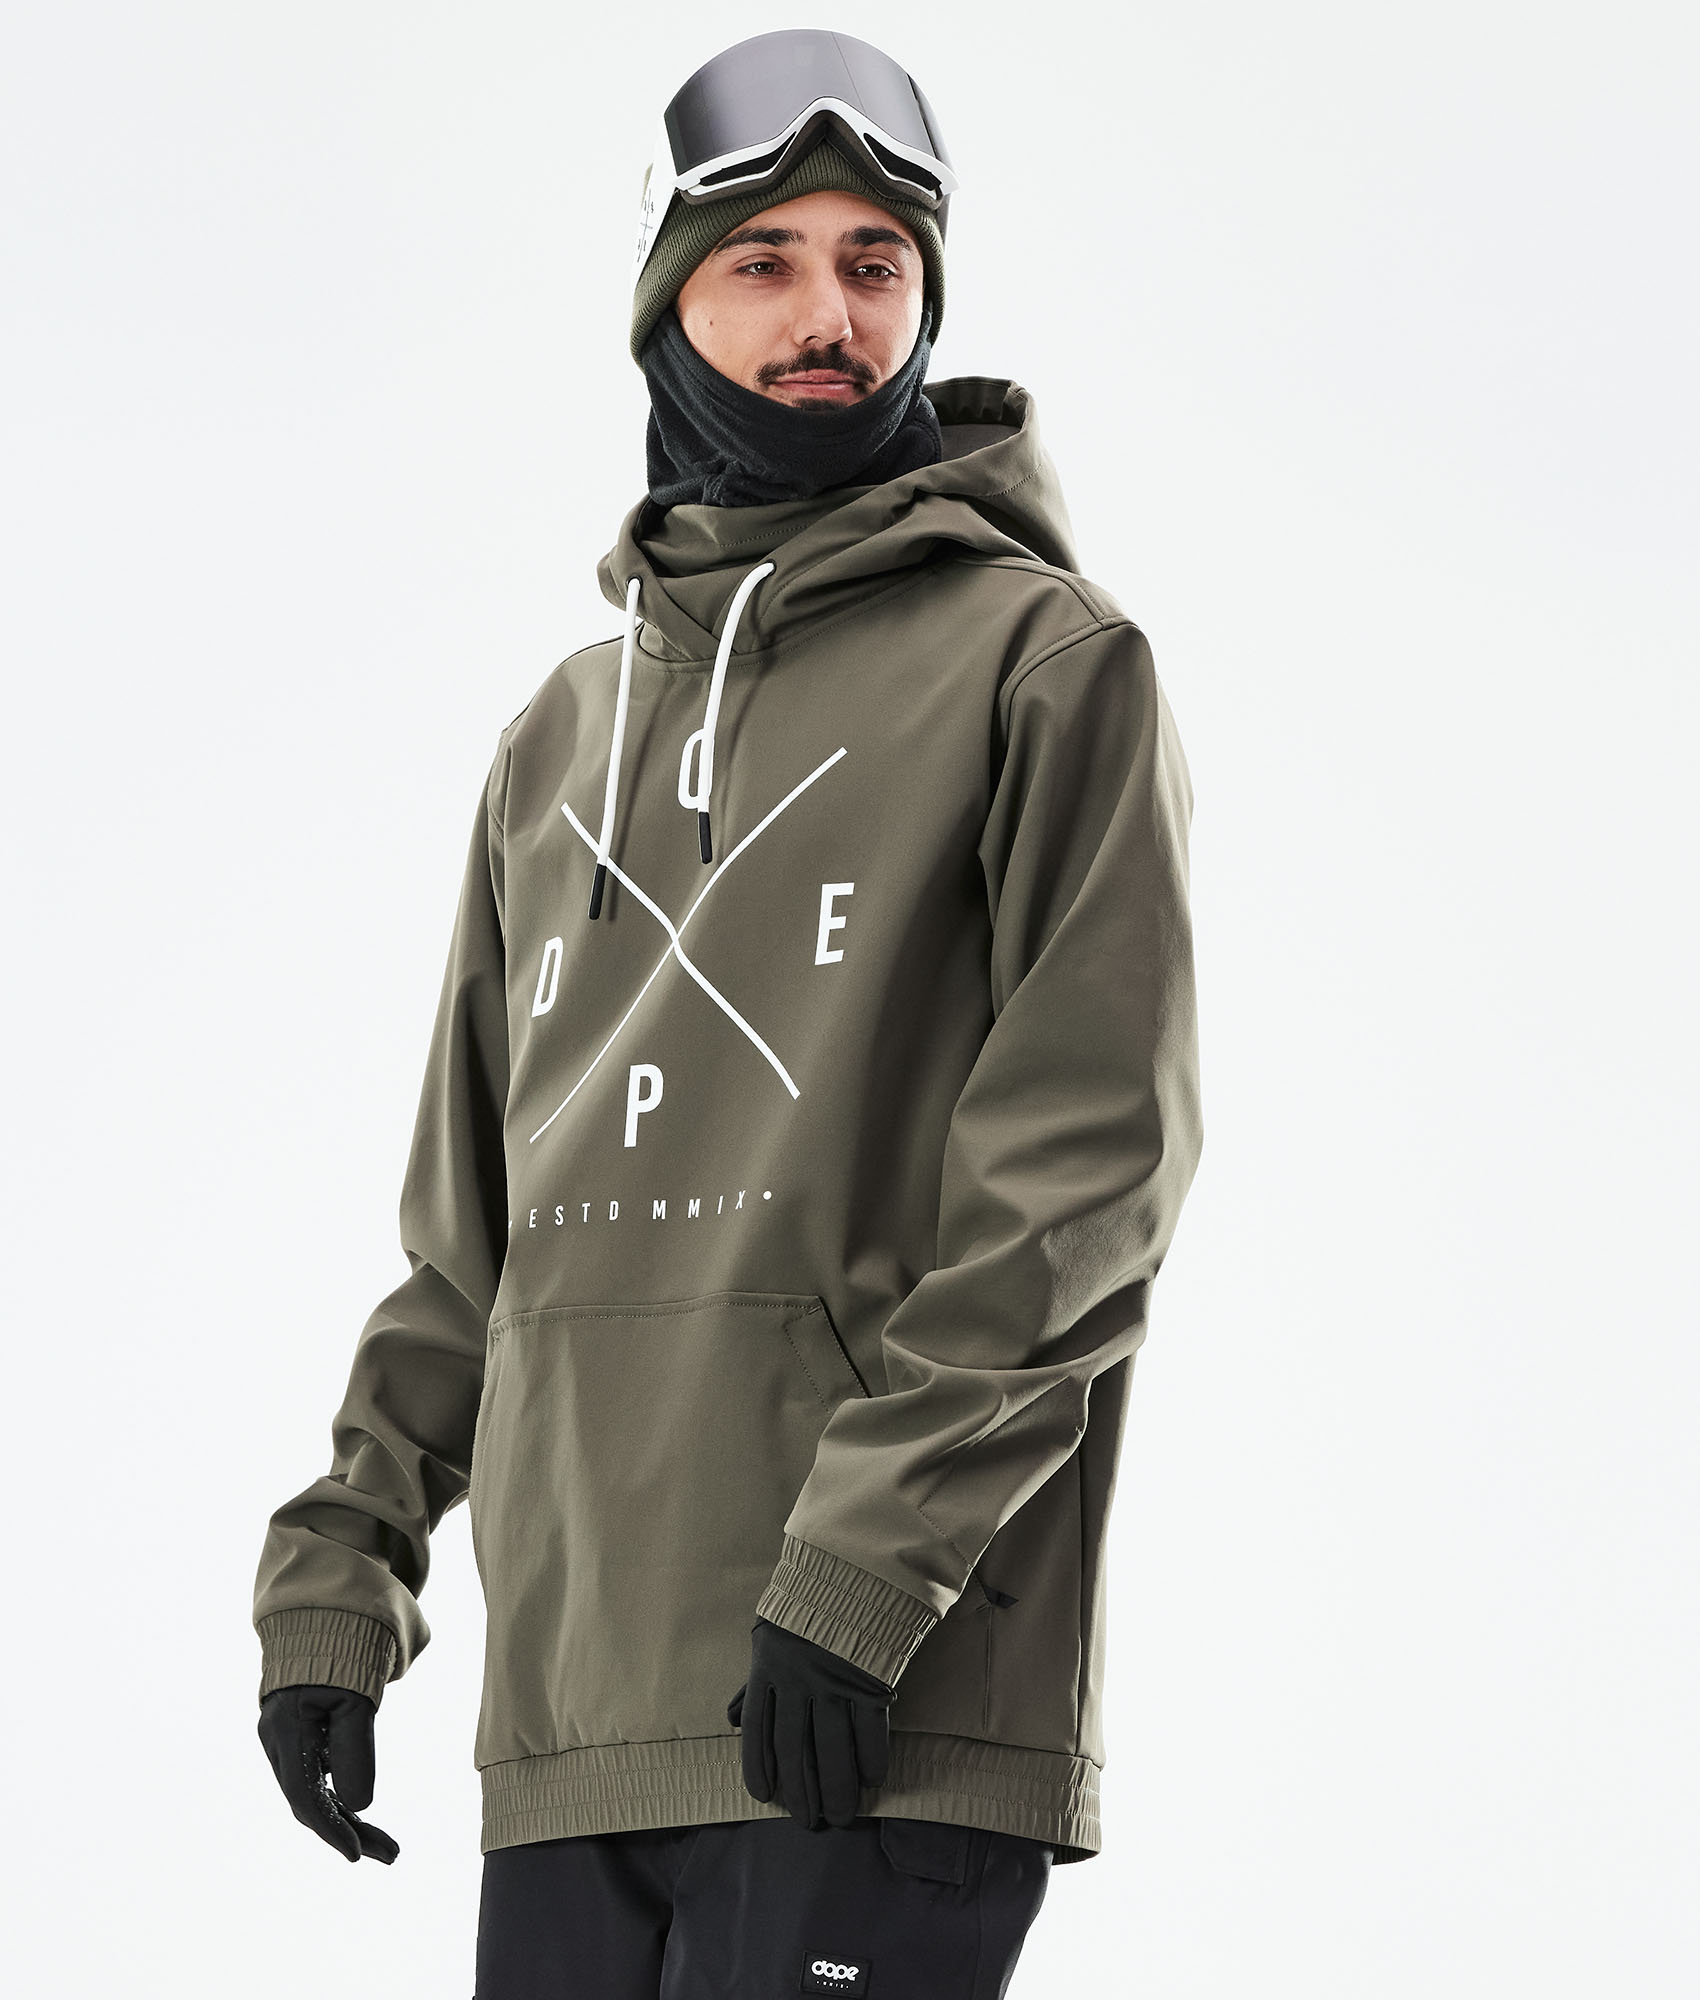 Mens Ski Jacket Snowboard D103 Green Winter Waterproof Breathable S M L XL XXL 